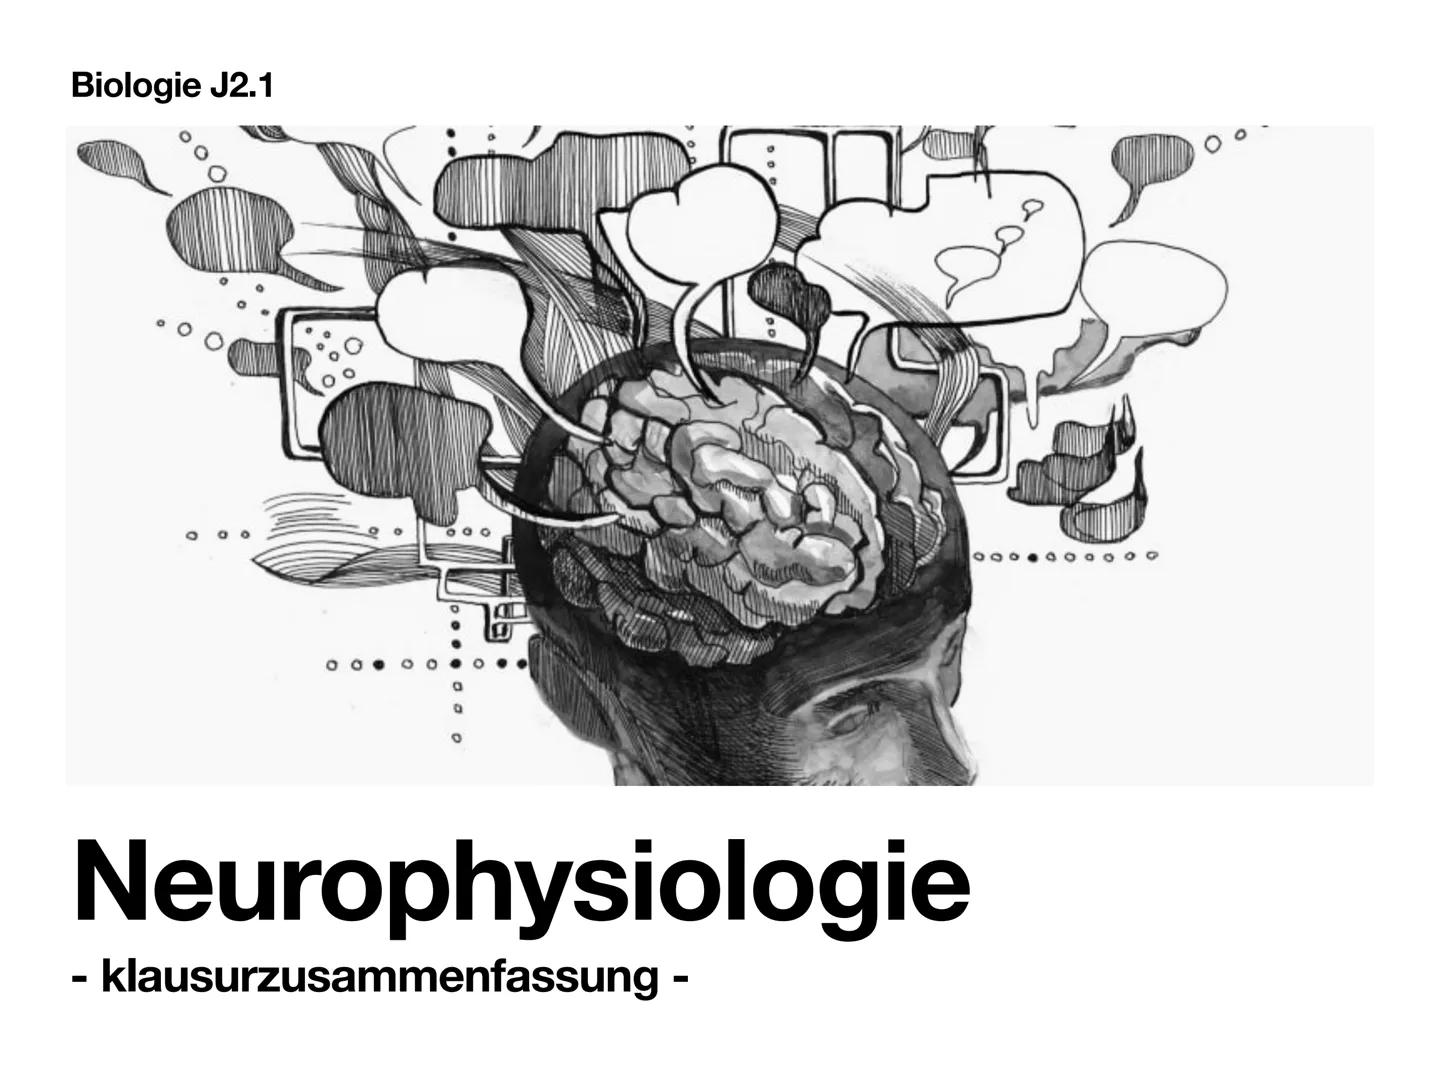 Biologie J2.1
000
00. 00
-
ooo
Neurophysiologie
-klausurzusammenfassung -
WARRE
oooooo ●
●
●
●
●
●
Synapse
• Wirkung von Synpasengiften
Summ